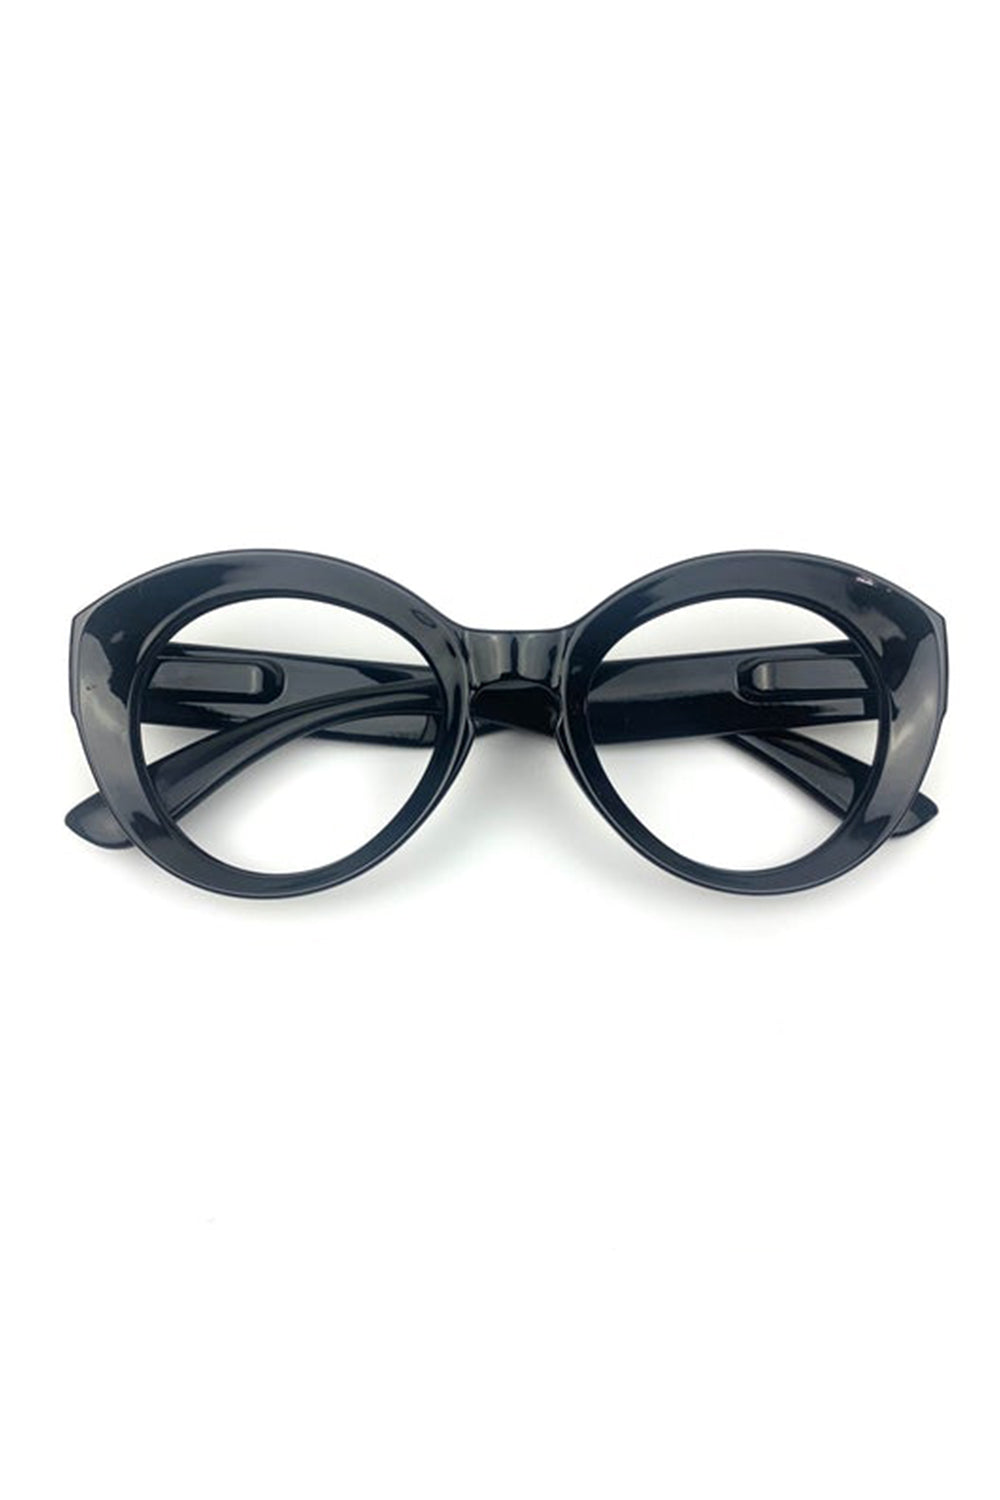 Captivated Soul / Ursula Eyewear 1 / Black